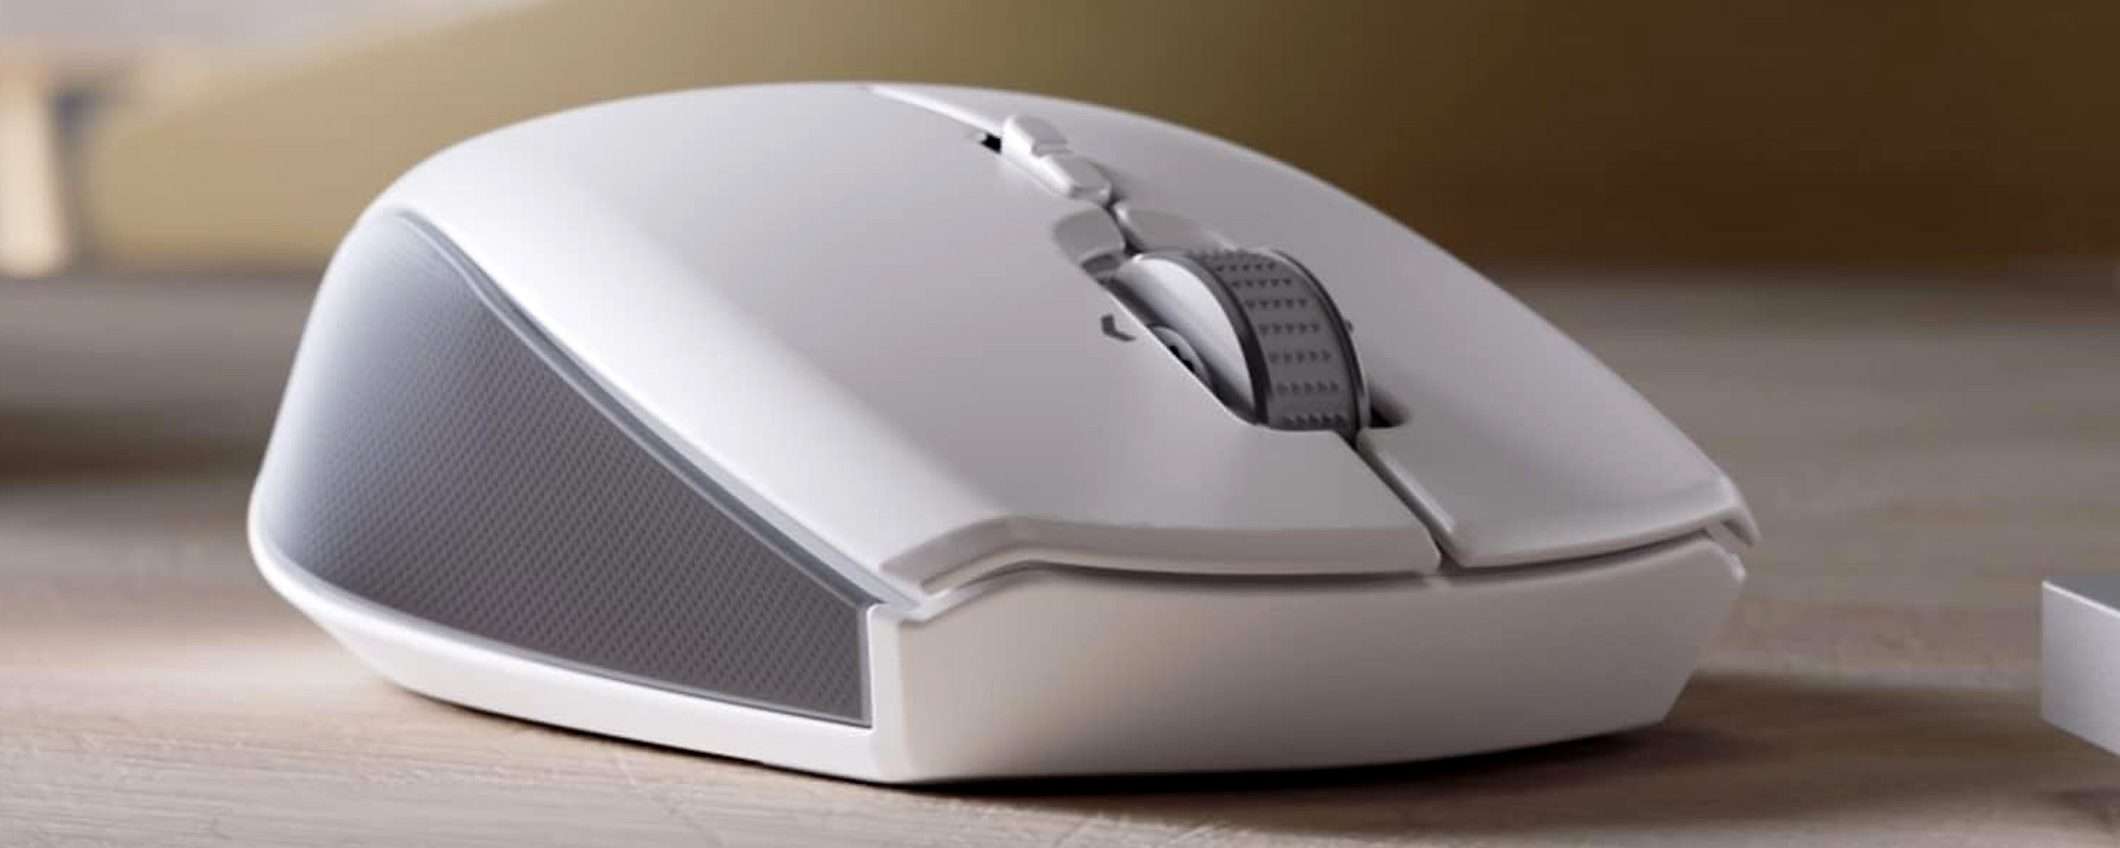 Mouse wireless Razer per il lavoro a PREZZO STRACCIATO